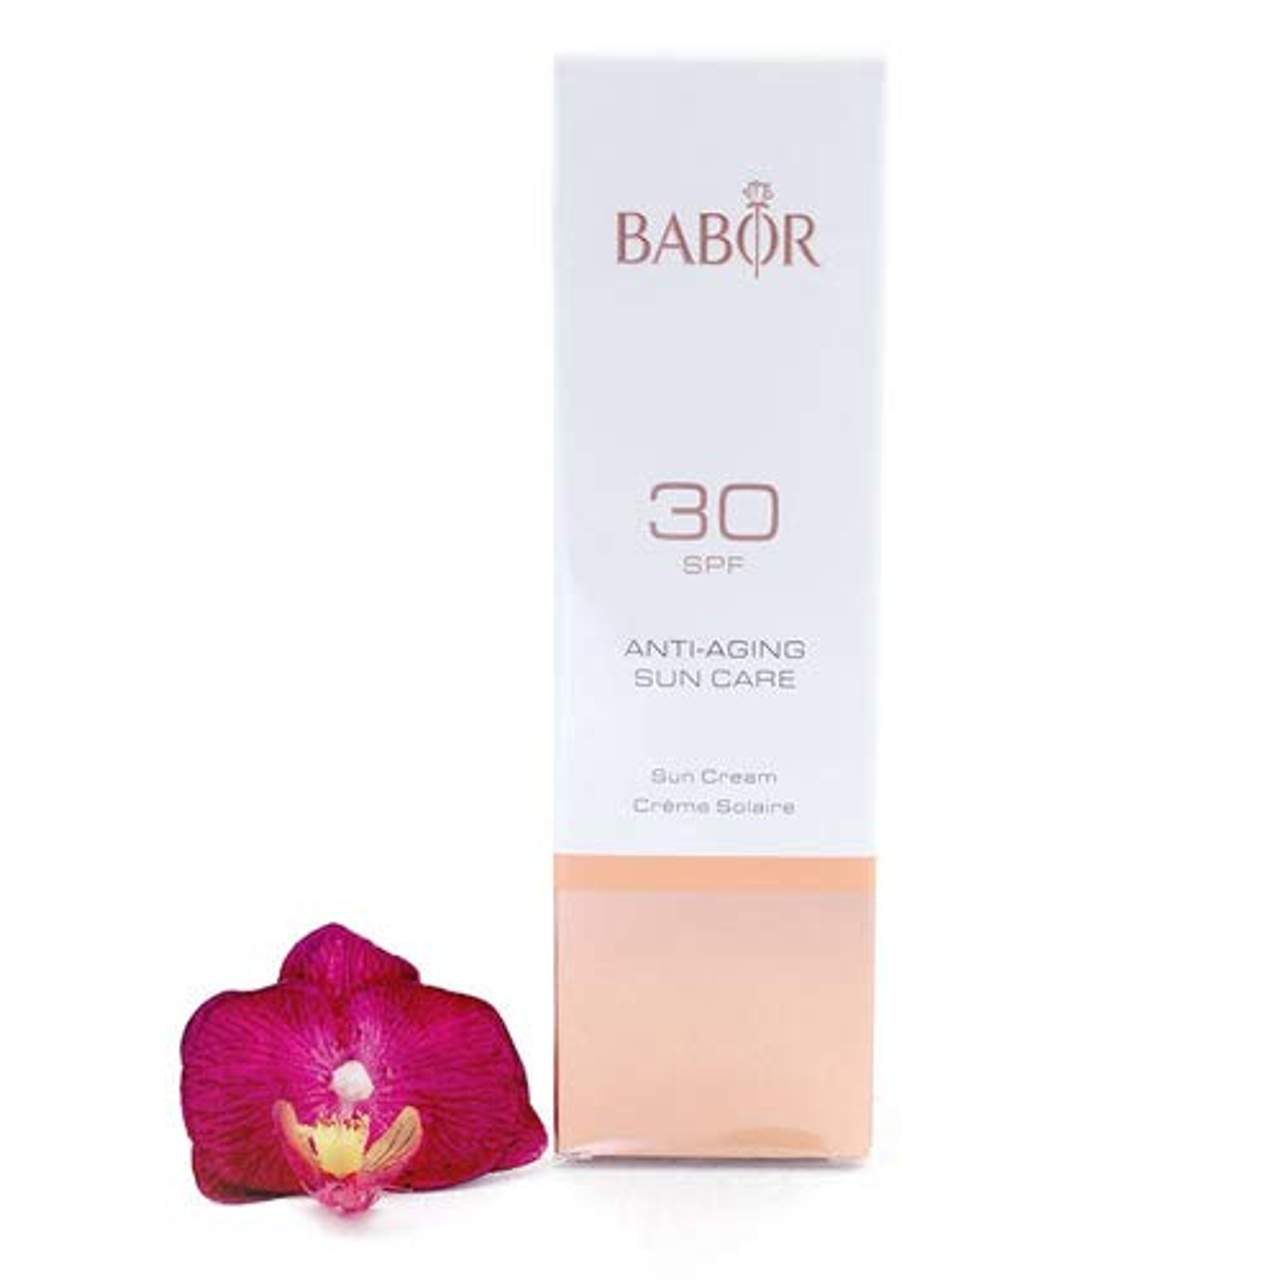 BABOR High Protection Sun Cream SPF 30